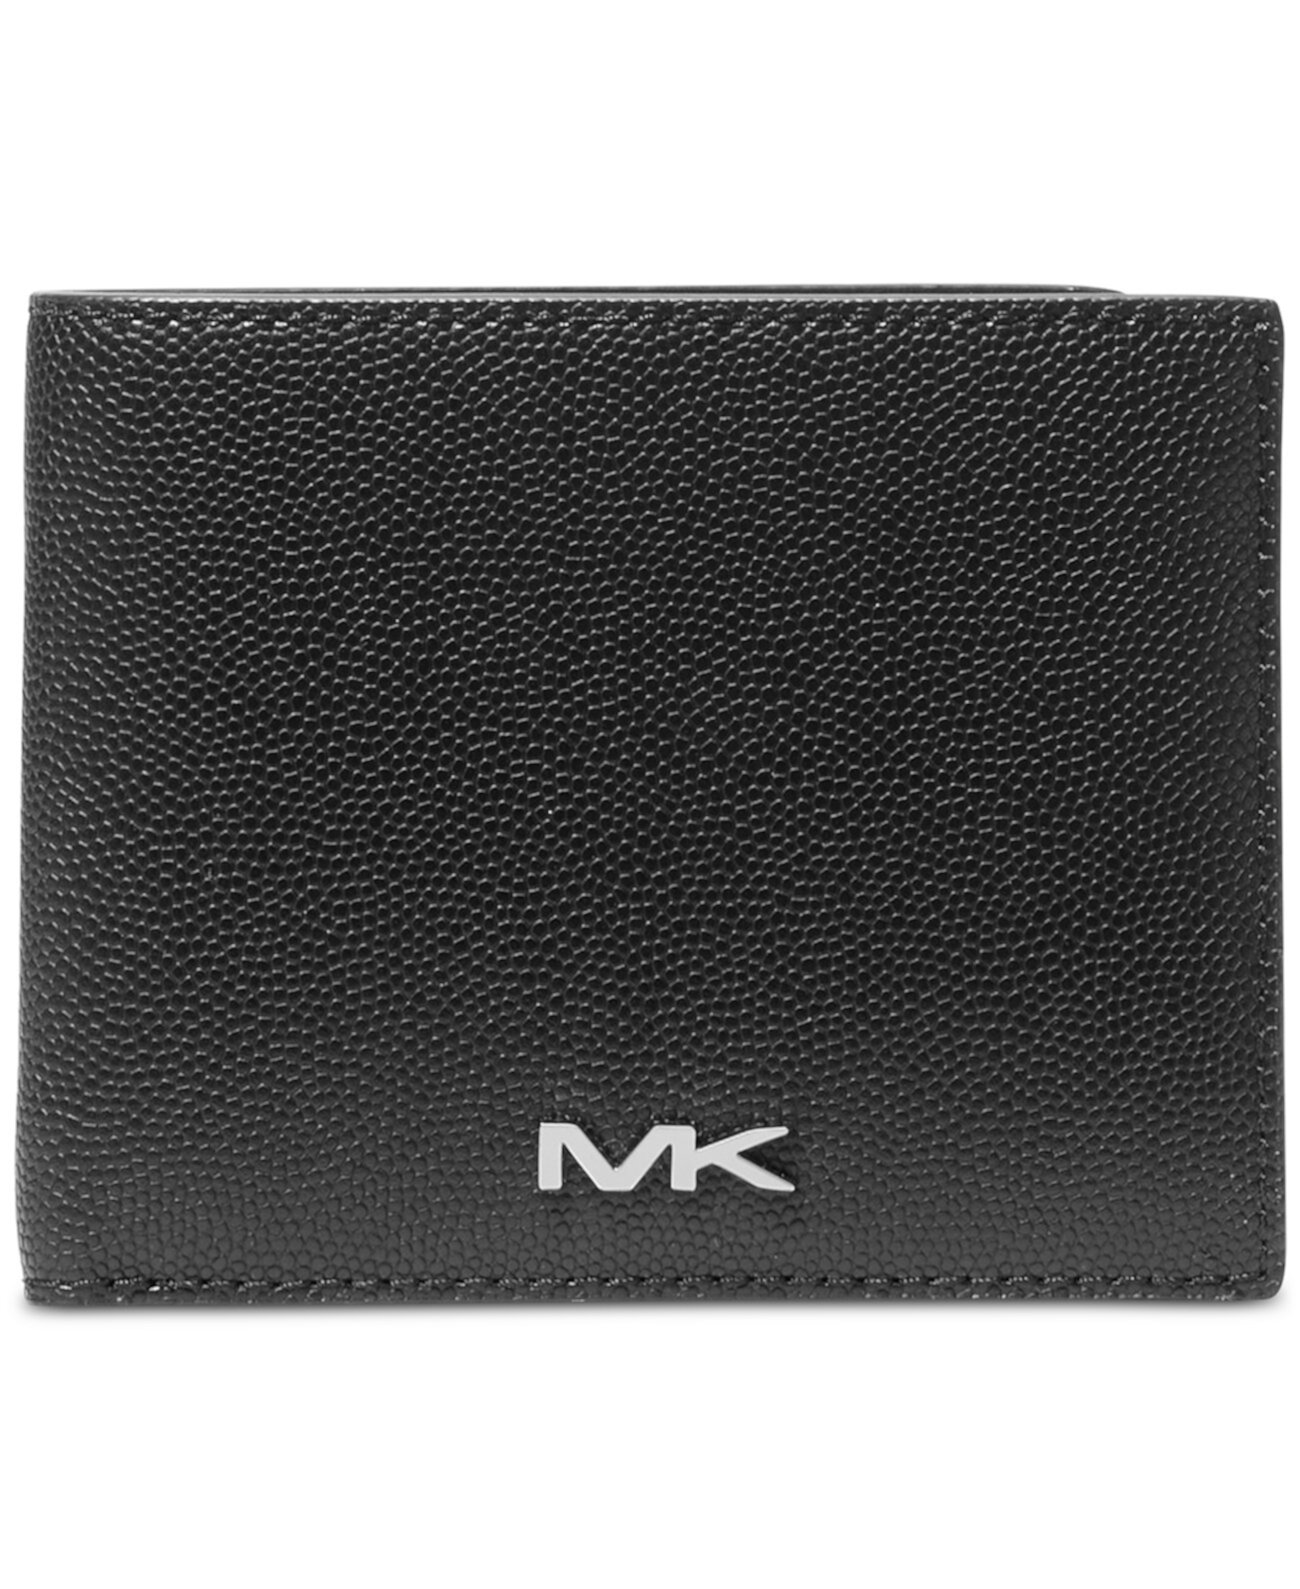 Мужской тонкий бумажник с металлизированной фурнитурой Michael Kors